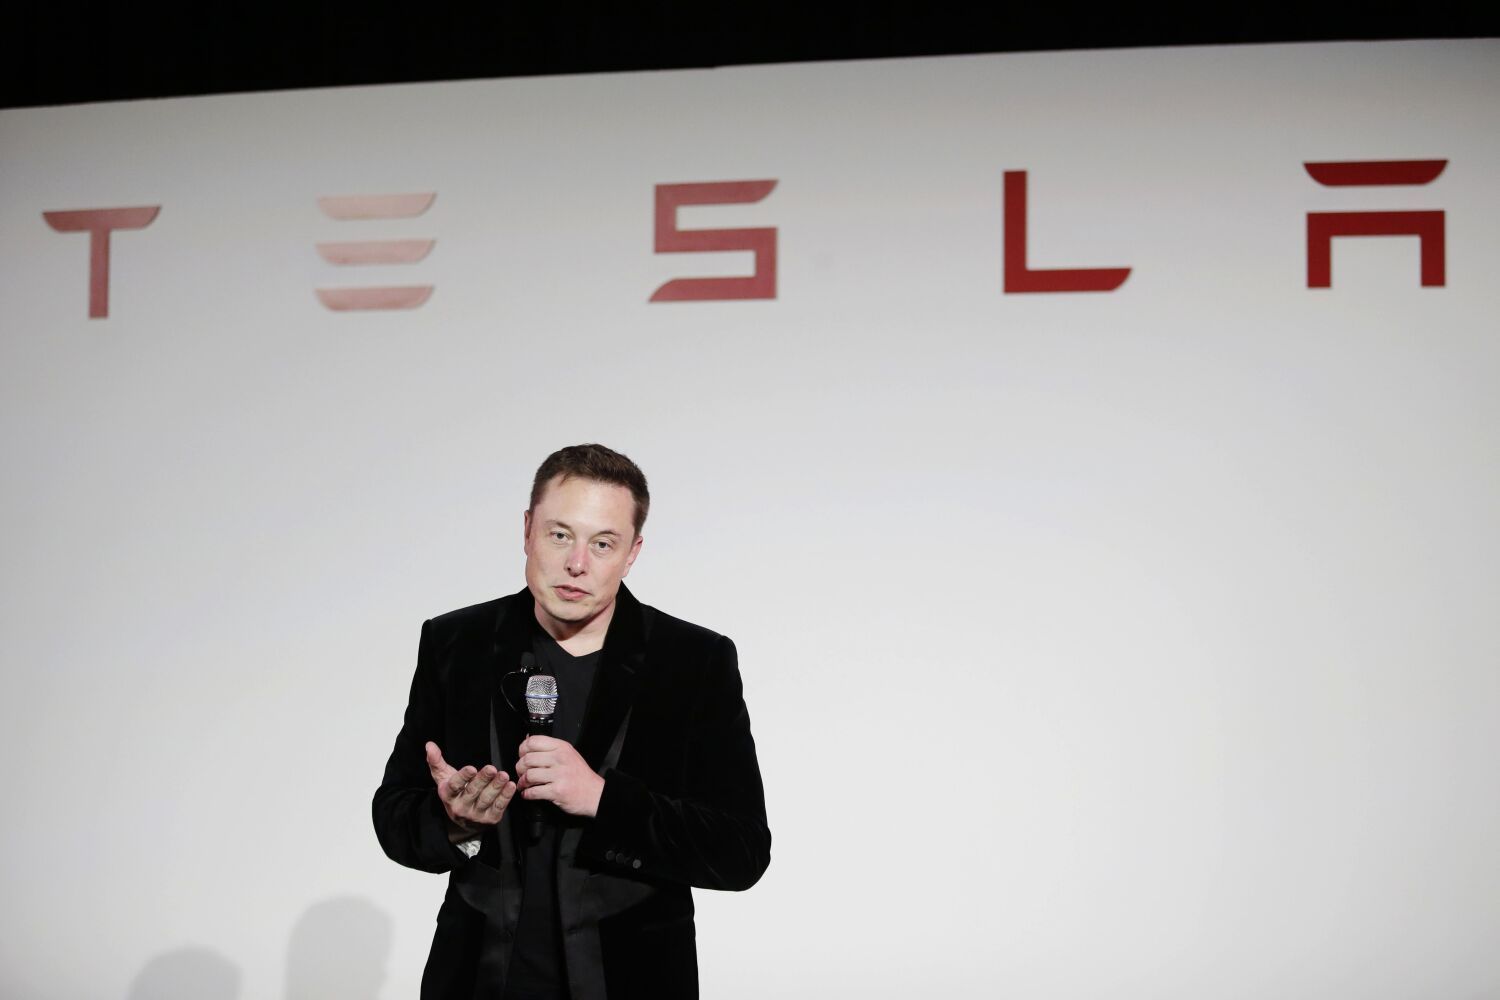 Elon Musk justifies 'funding secured' tweet during Tesla trial